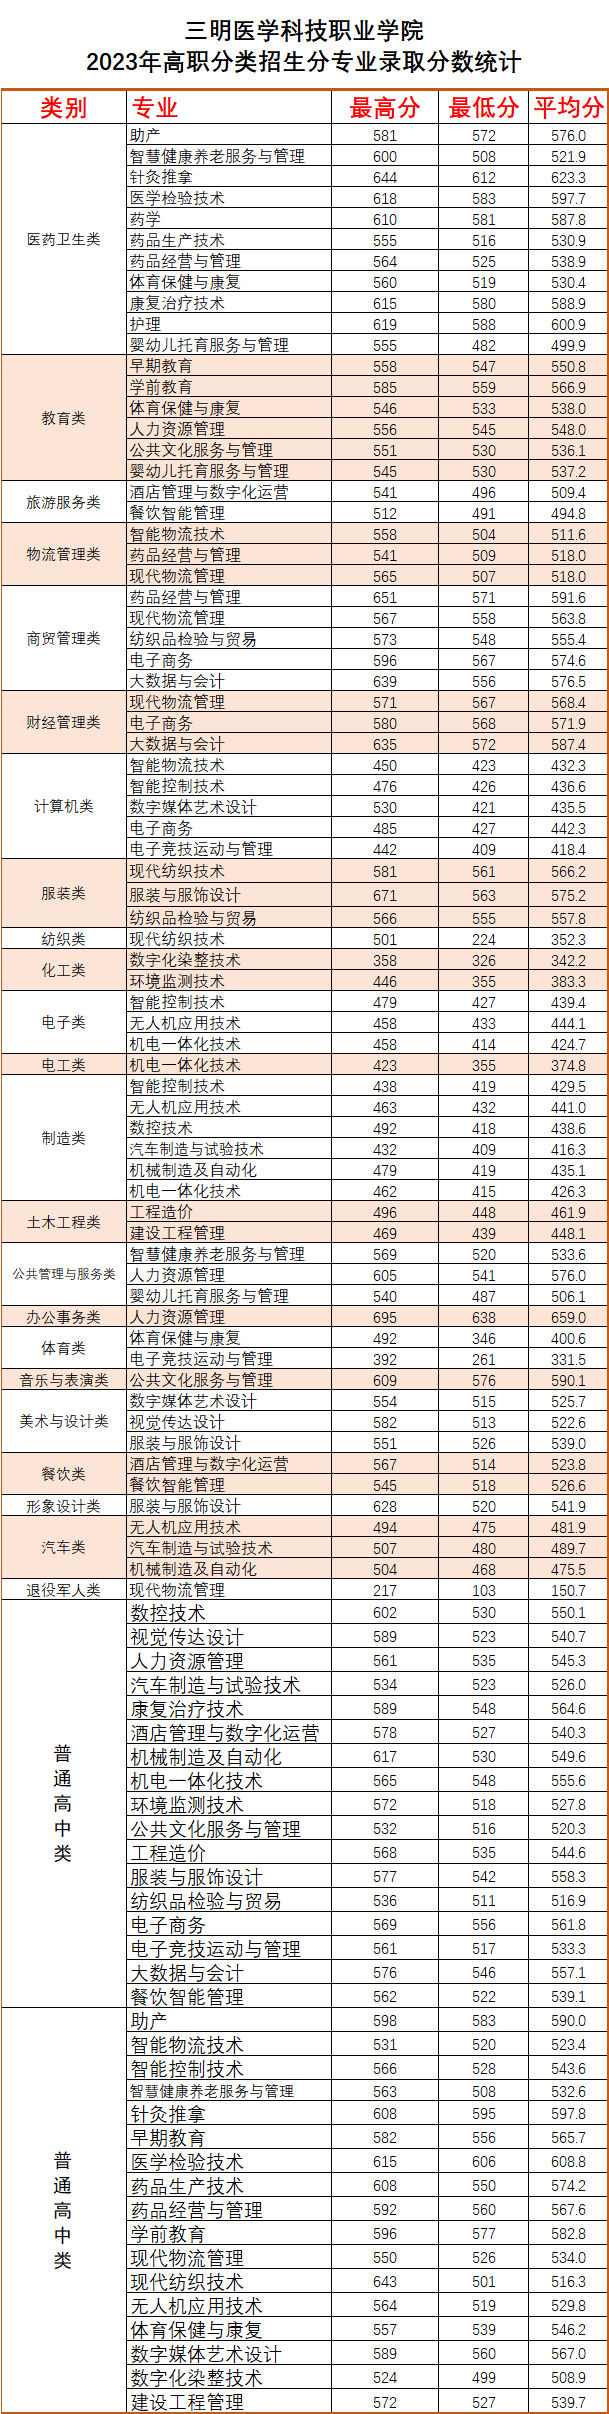 三明医学科技职业学院2023年高职院校分类考试分专业录取分数情况